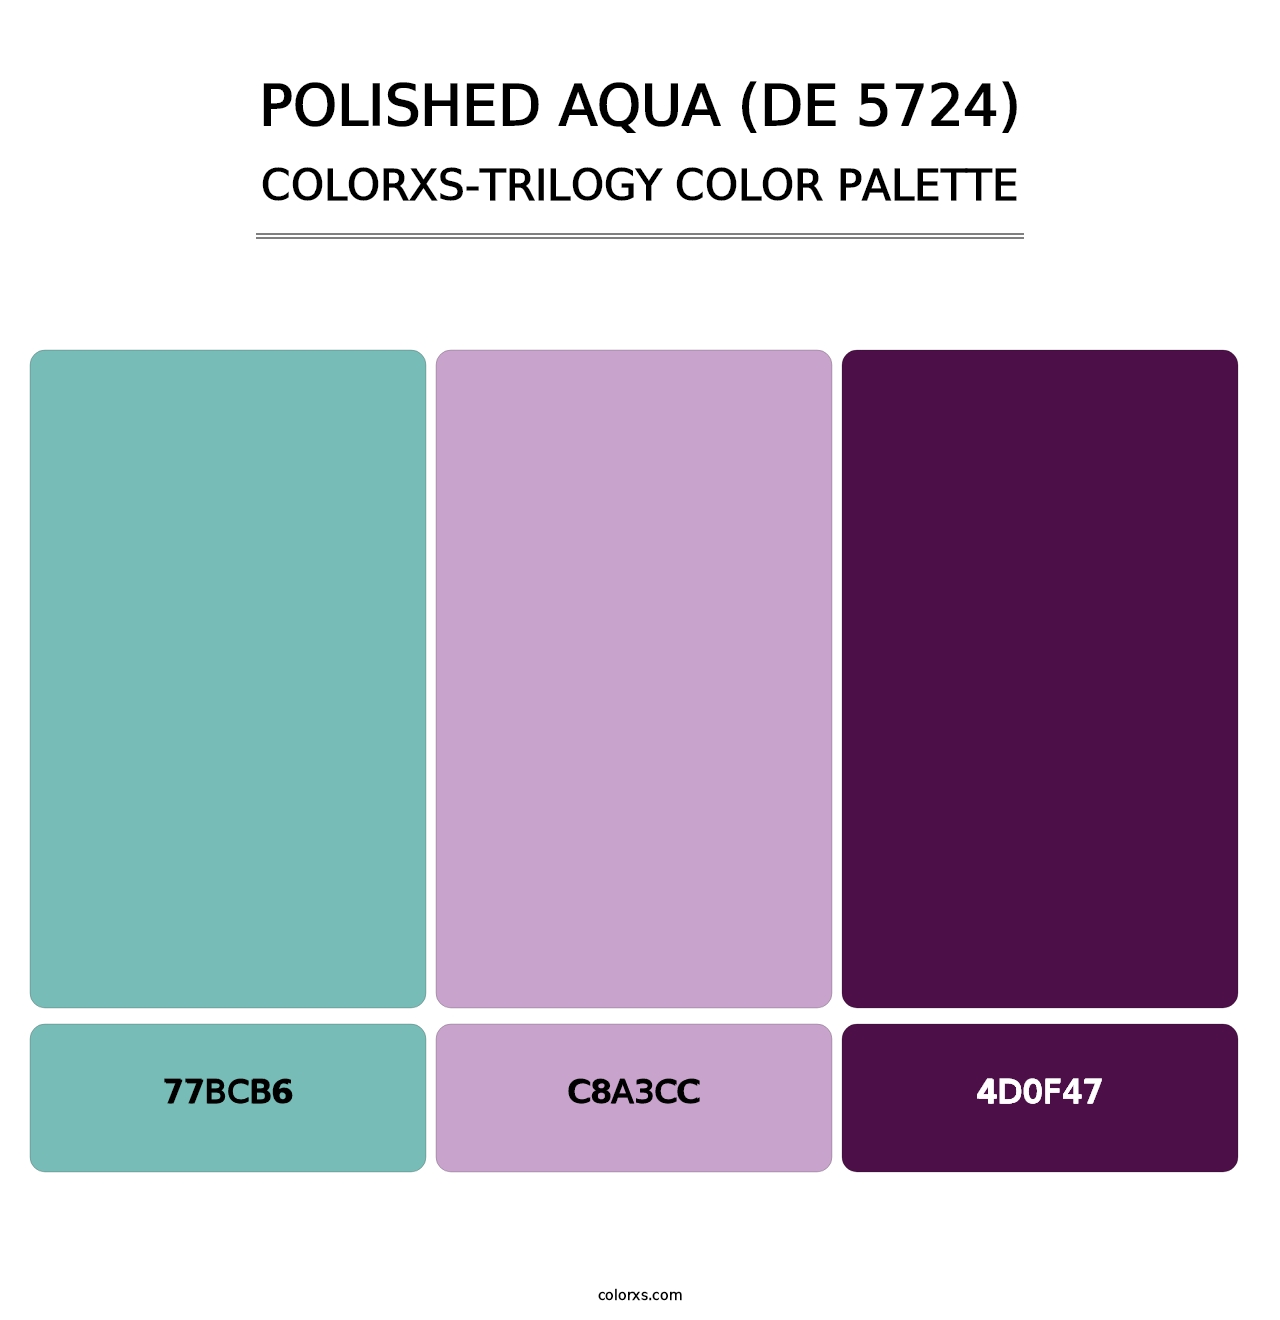 Polished Aqua (DE 5724) - Colorxs Trilogy Palette